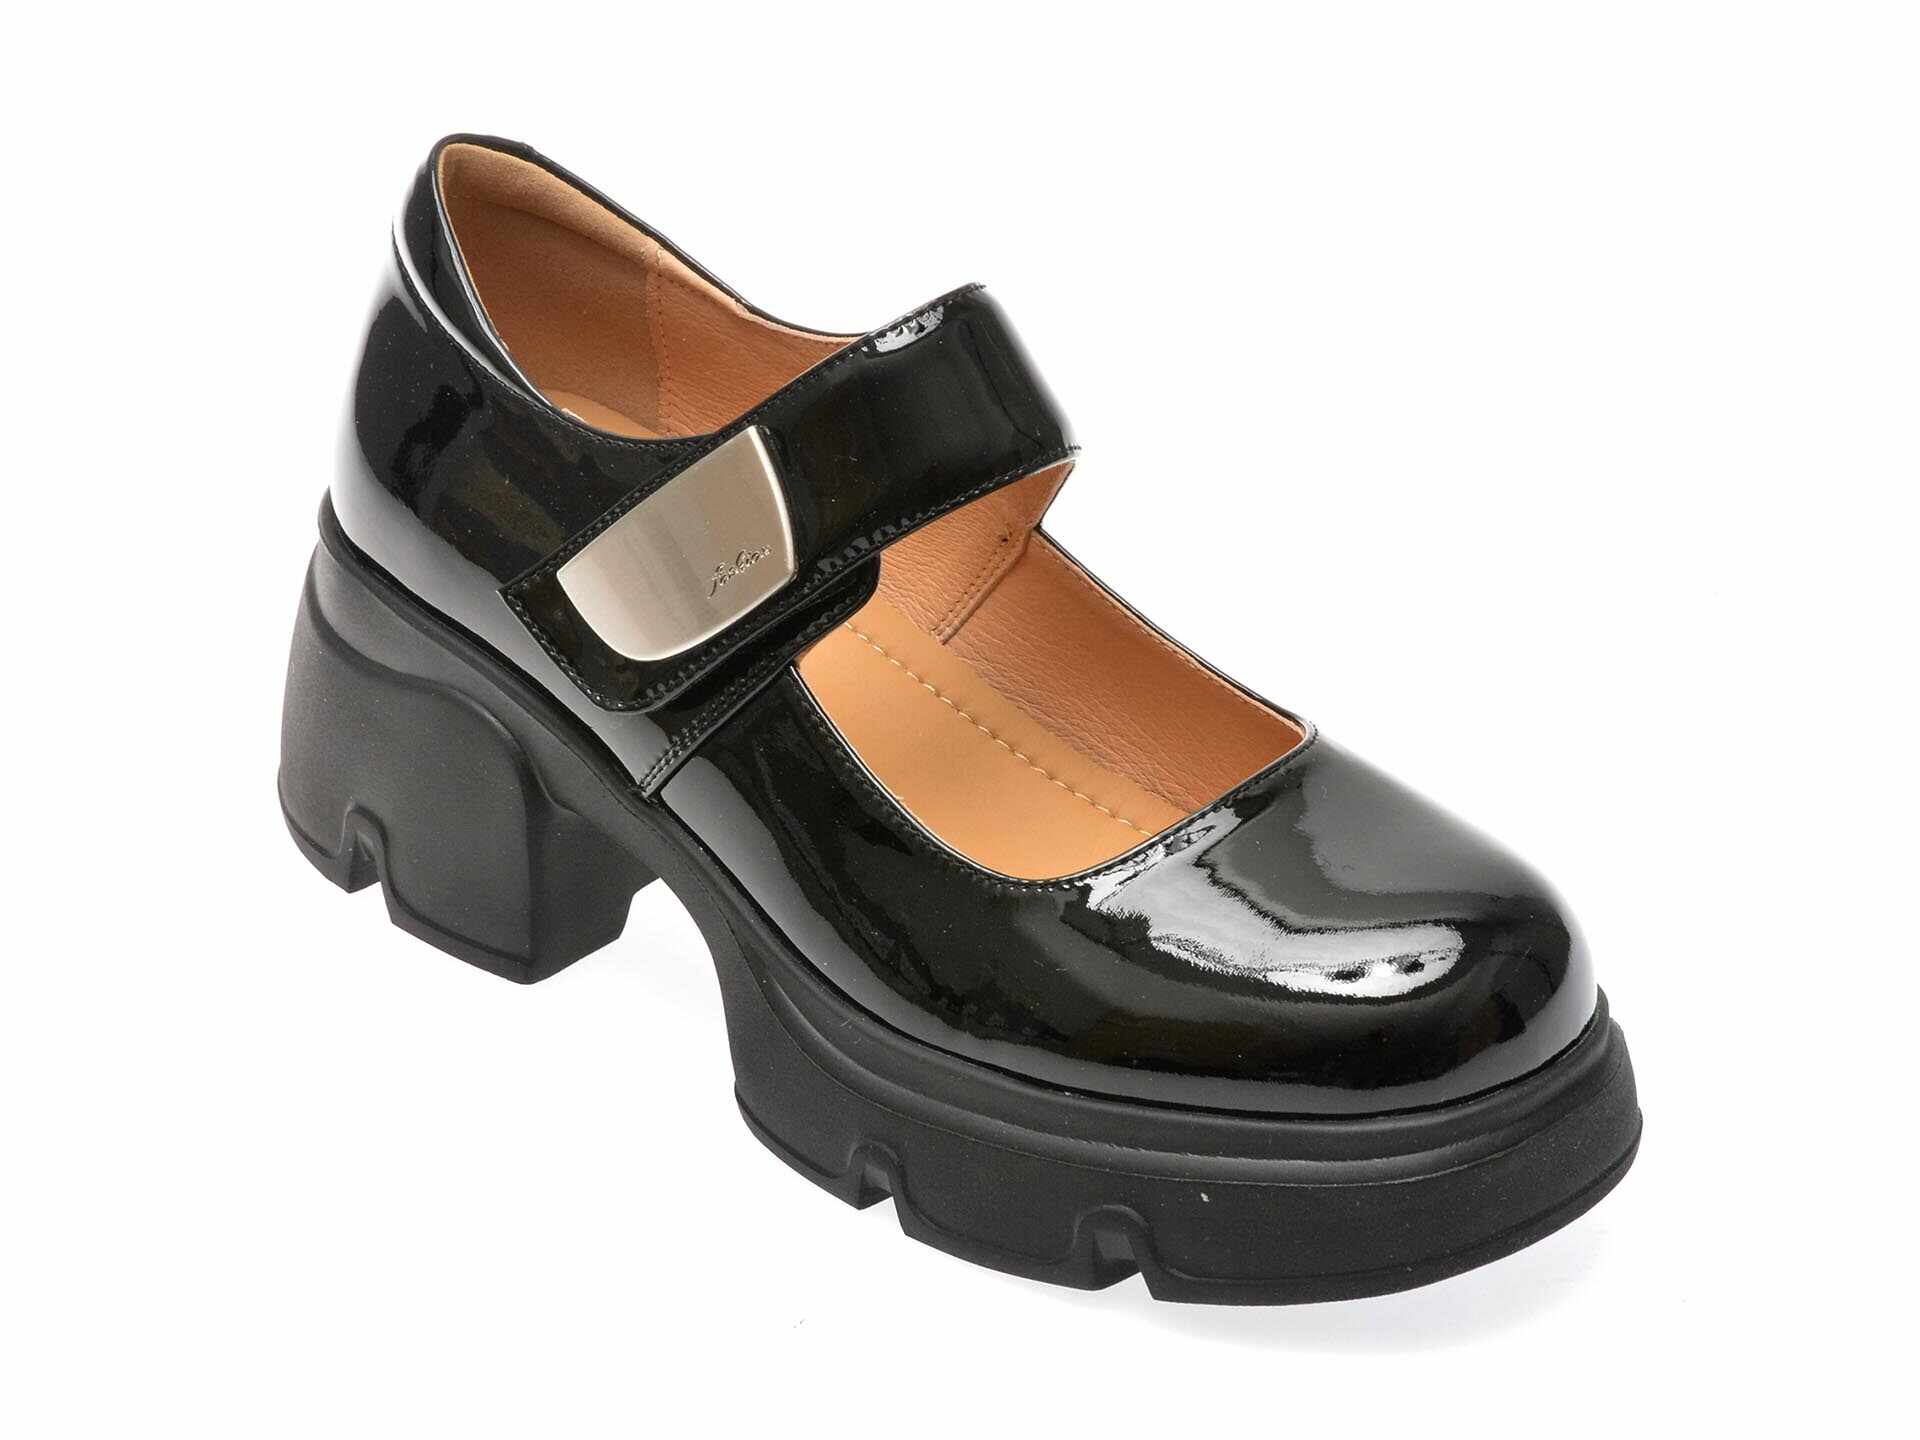 Pantofi casual FLAVIA PASSINI negri, 23210, din piele naturala lacuita